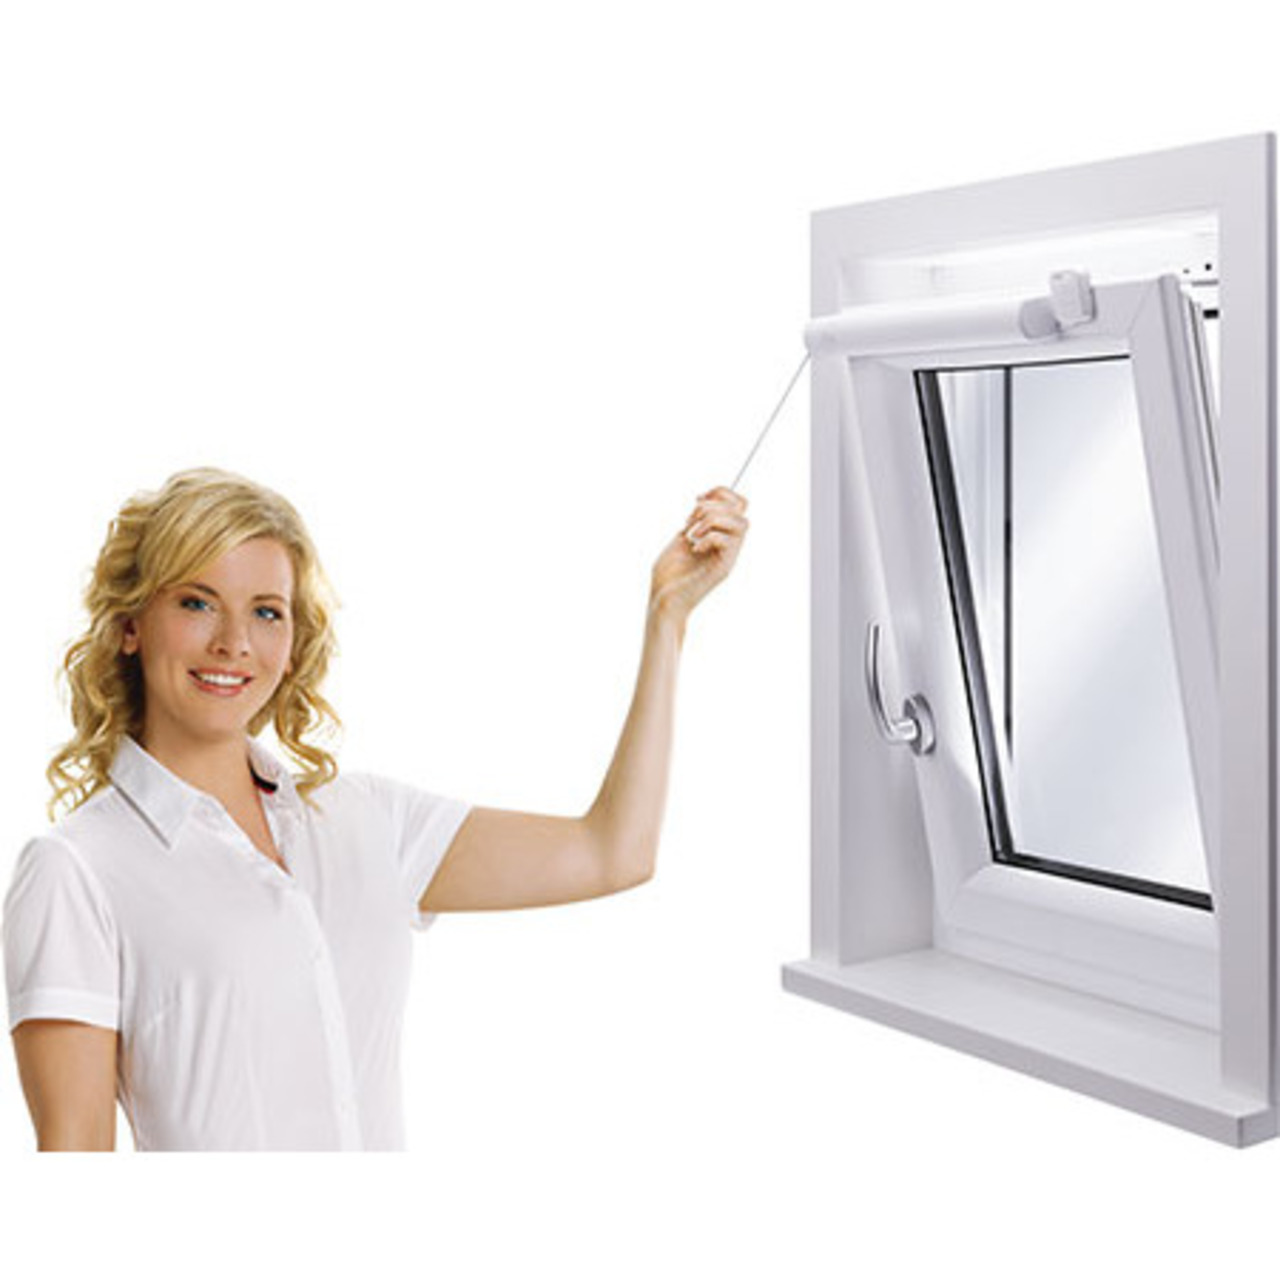 Winflip automatischer Fensterschliesser unter Haustechnik